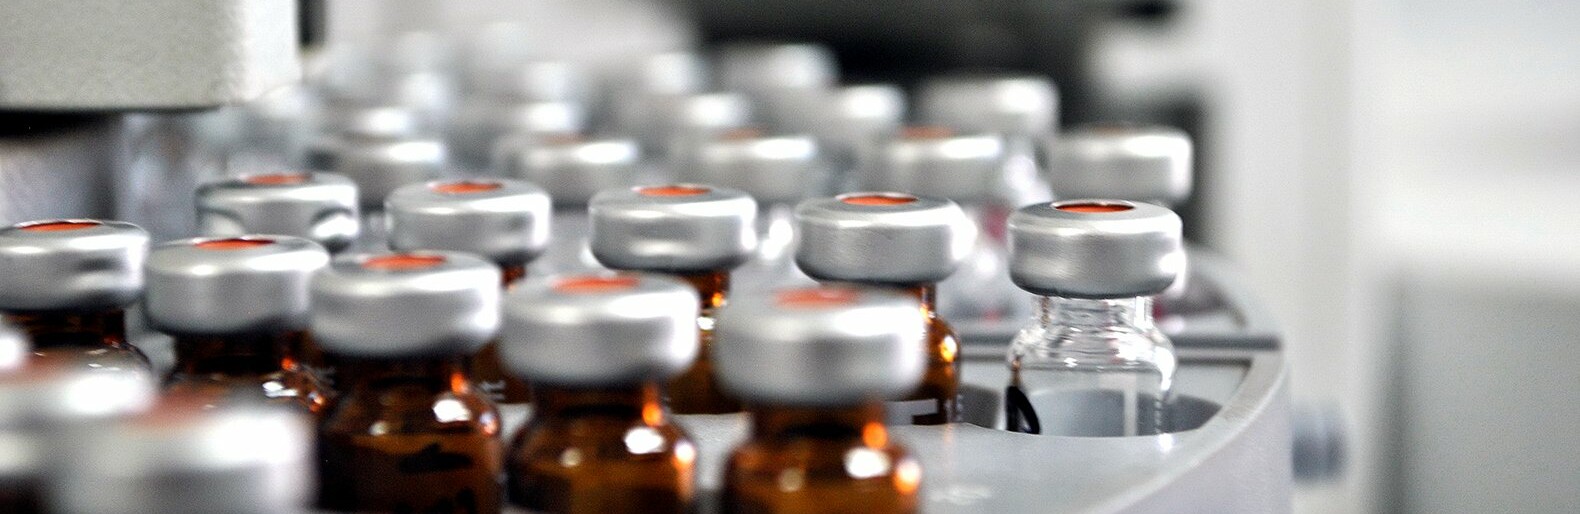 Министр здравоохранения Иконников: В некоторых районах могут отсутствовать лекарства из-за нарушения логистики